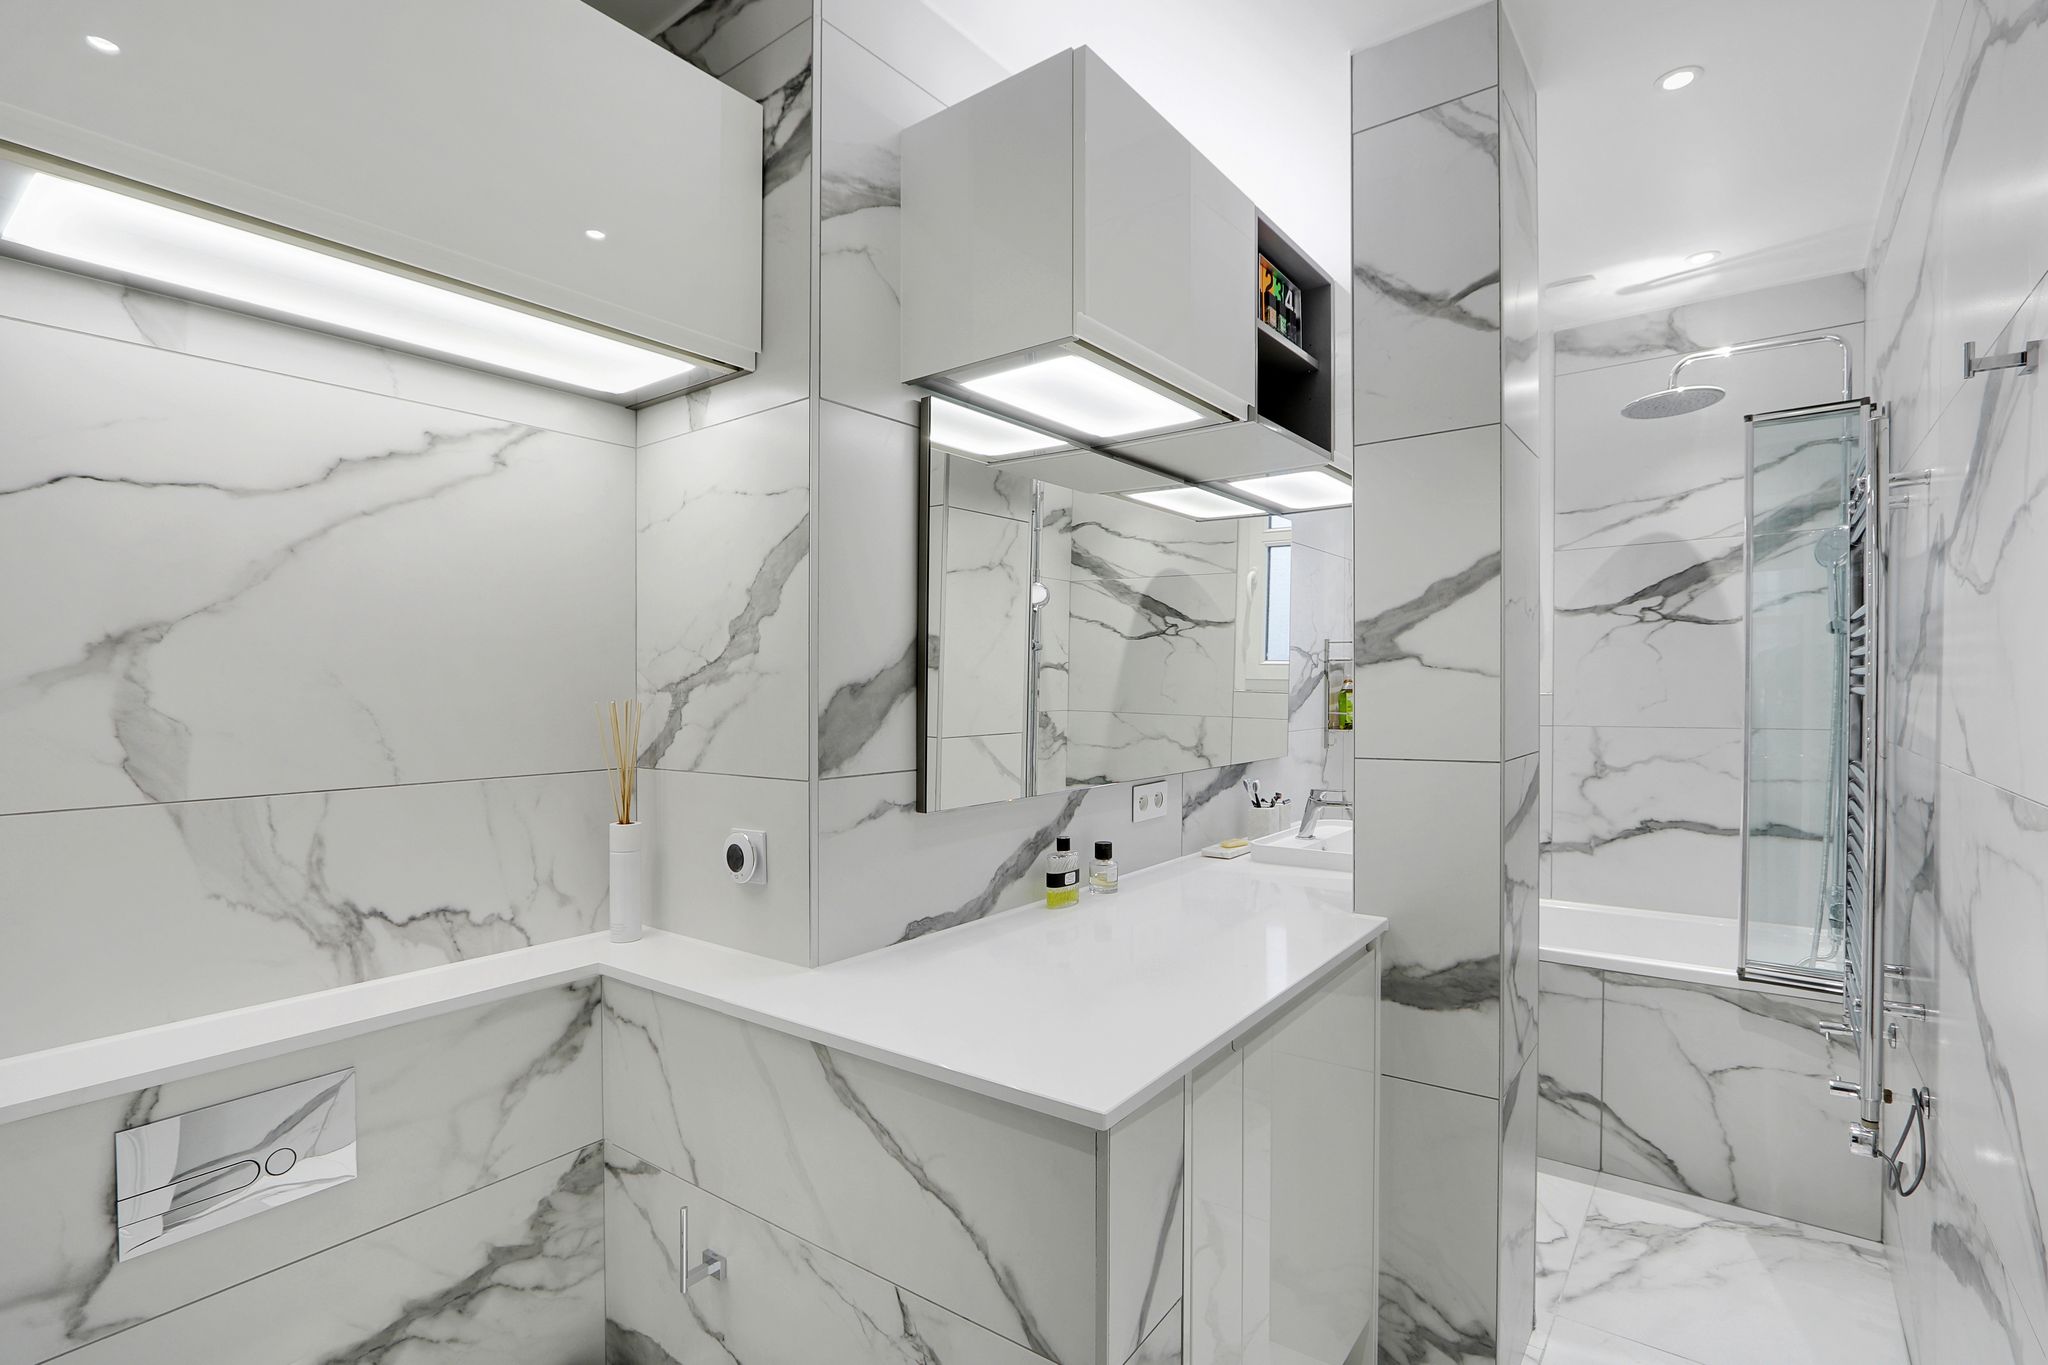 Salle de bain en marbre